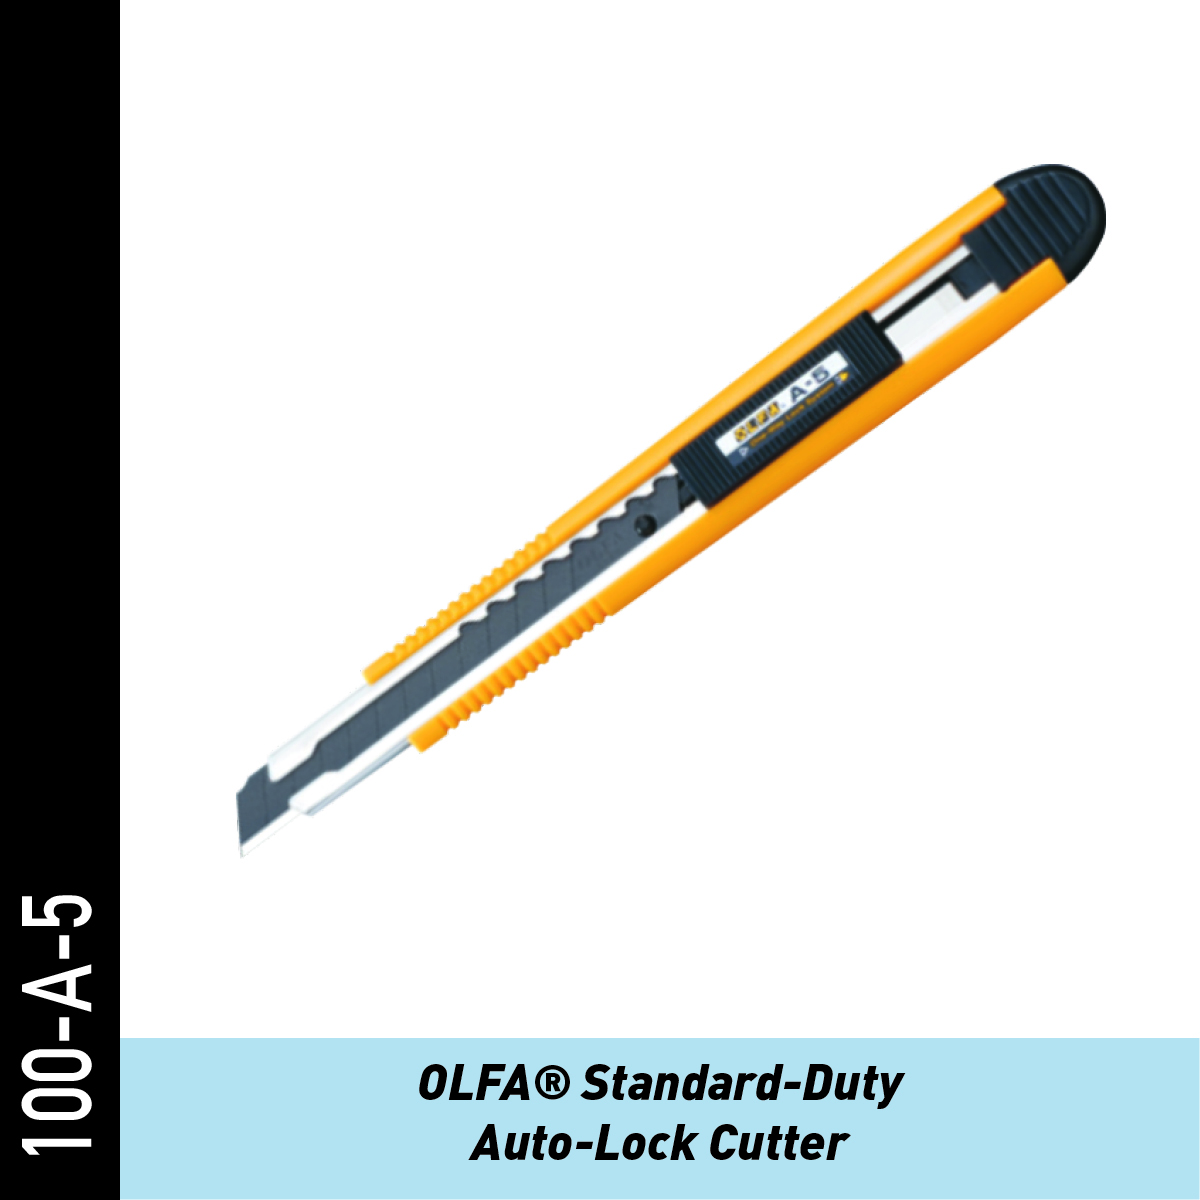 OLFA Standard-Duty Universalmesser mit Gleitentriegelung